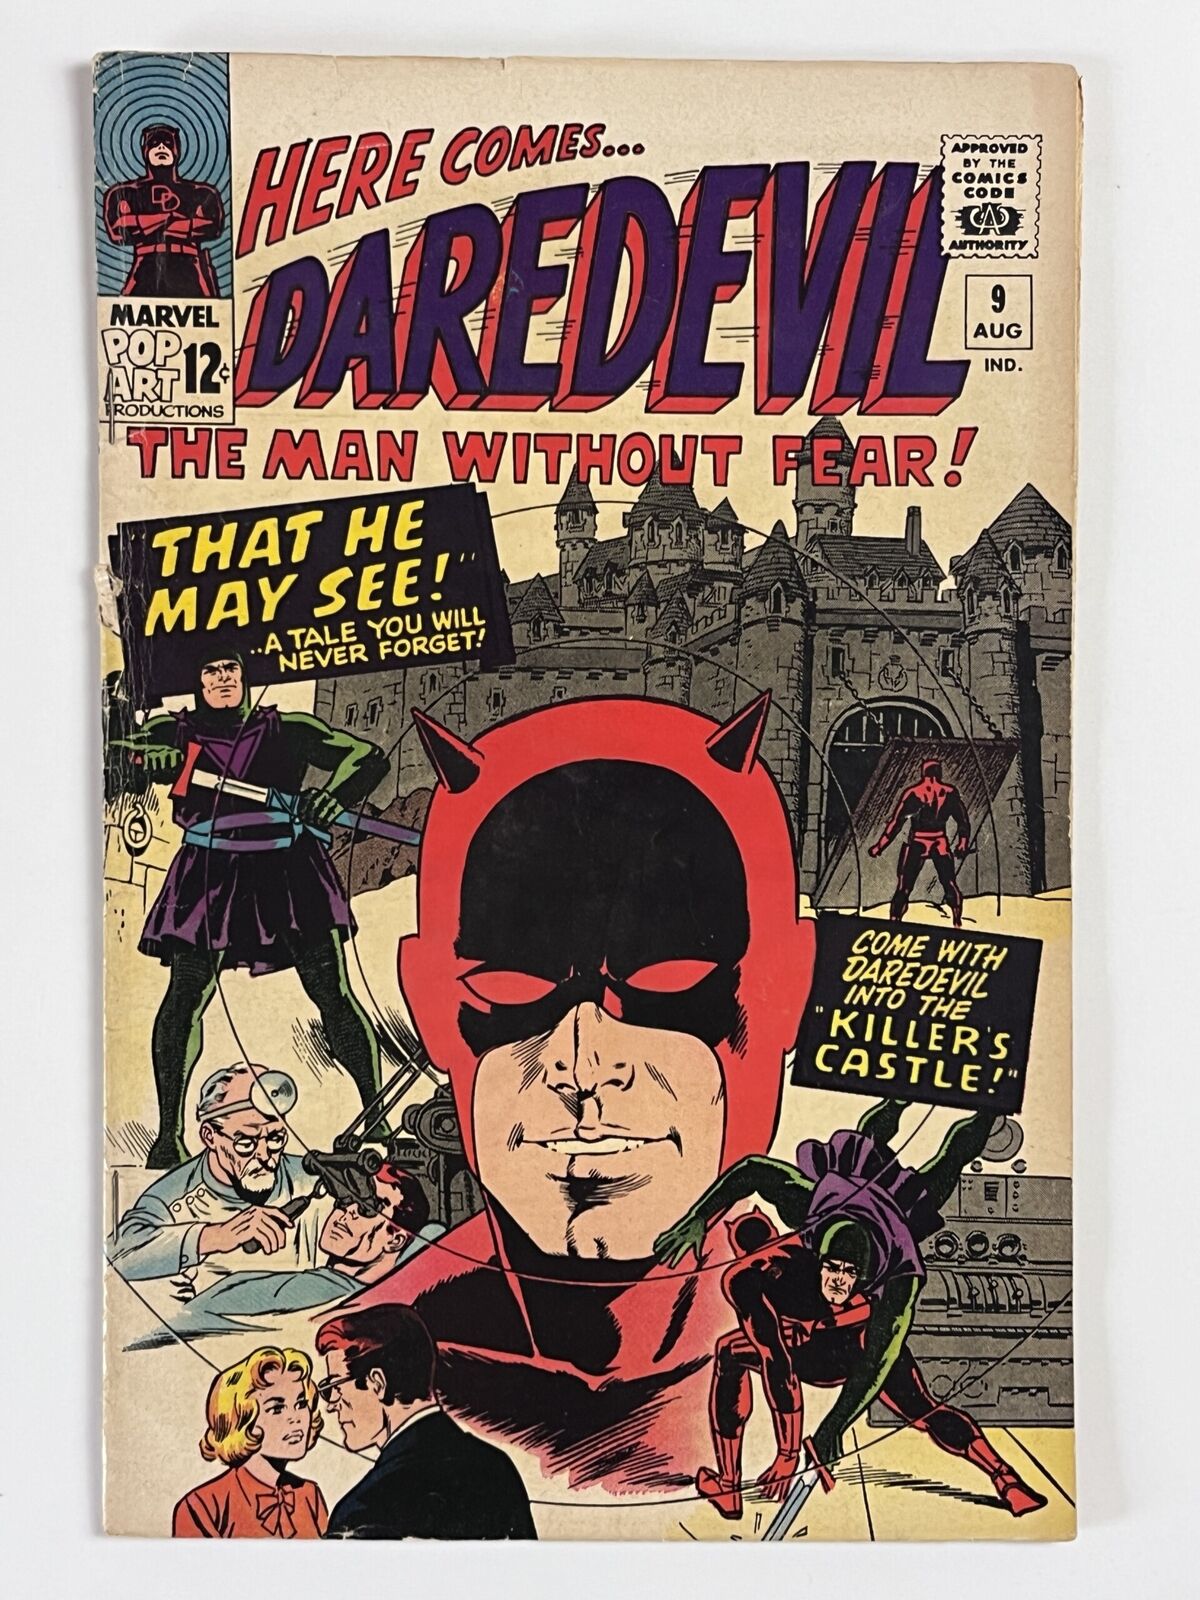 Daredevil #9 (1965) in 4.0 Very Good